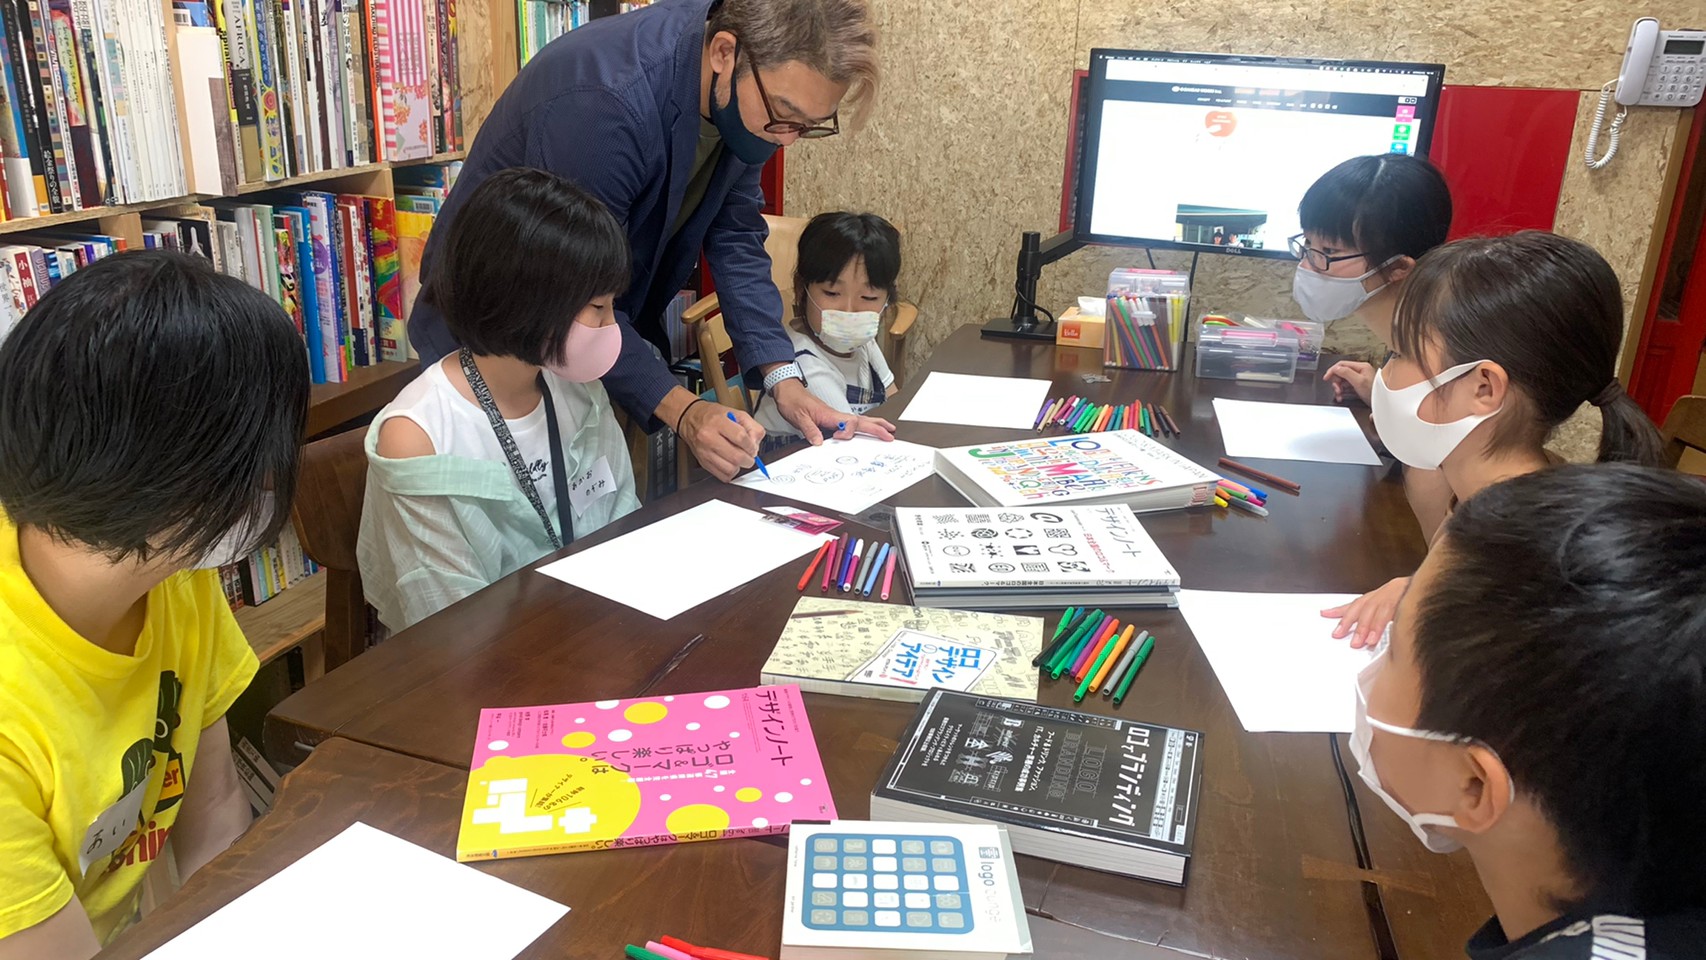 飛騨高山フューチャープロジェクトが主催する「地域お仕事発見隊」に、蒲優祐がデザイナー体験のプログラムを提供しました。